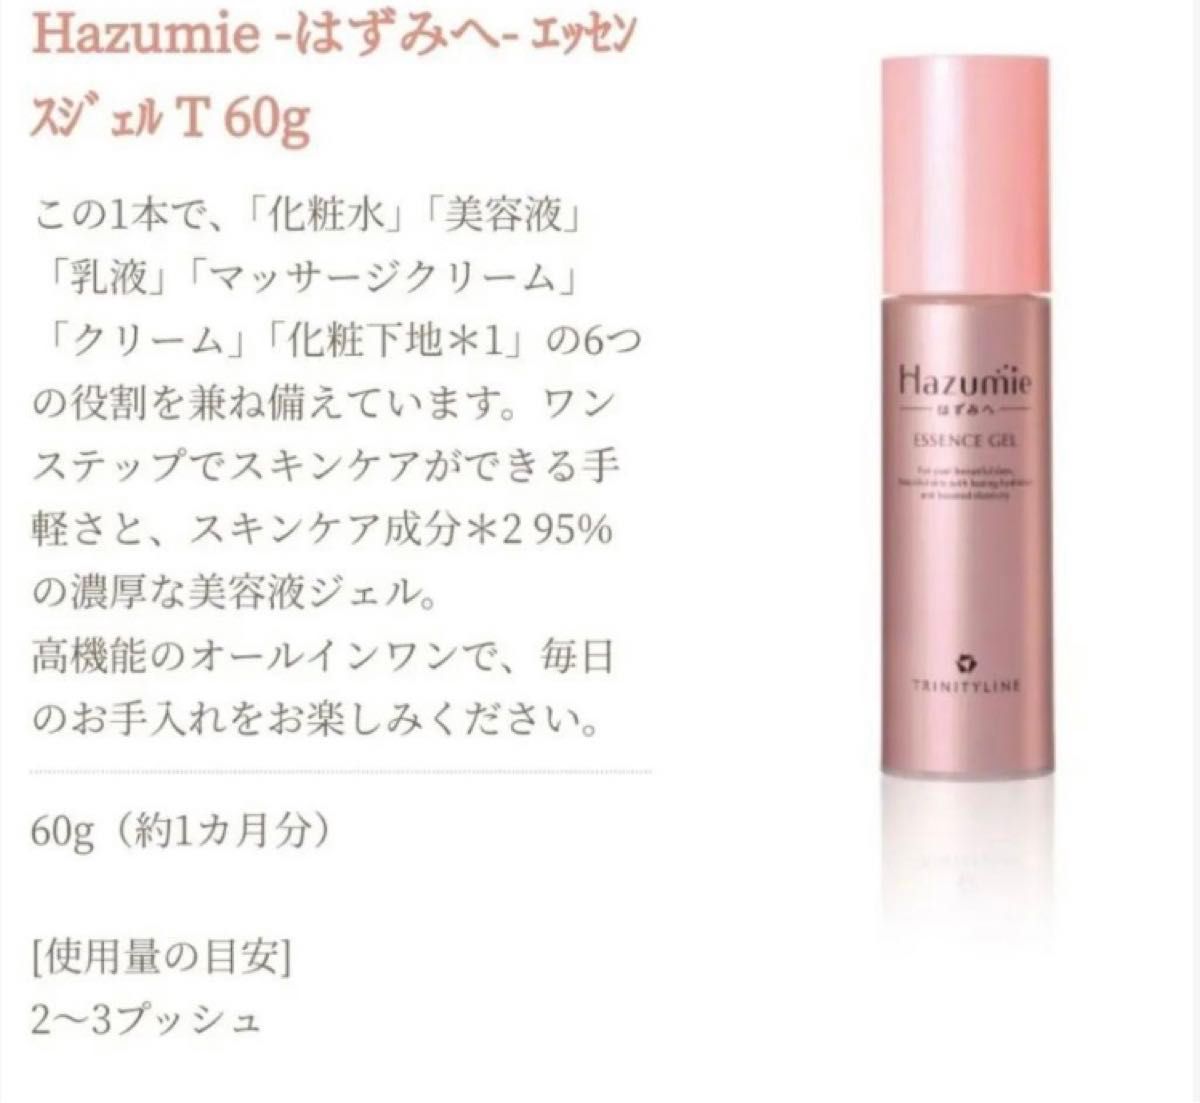 【新品未開封】 Hazumie はずみへ トリニティライン エッセンスジェル〈美容液ジェル〉60g 日本製